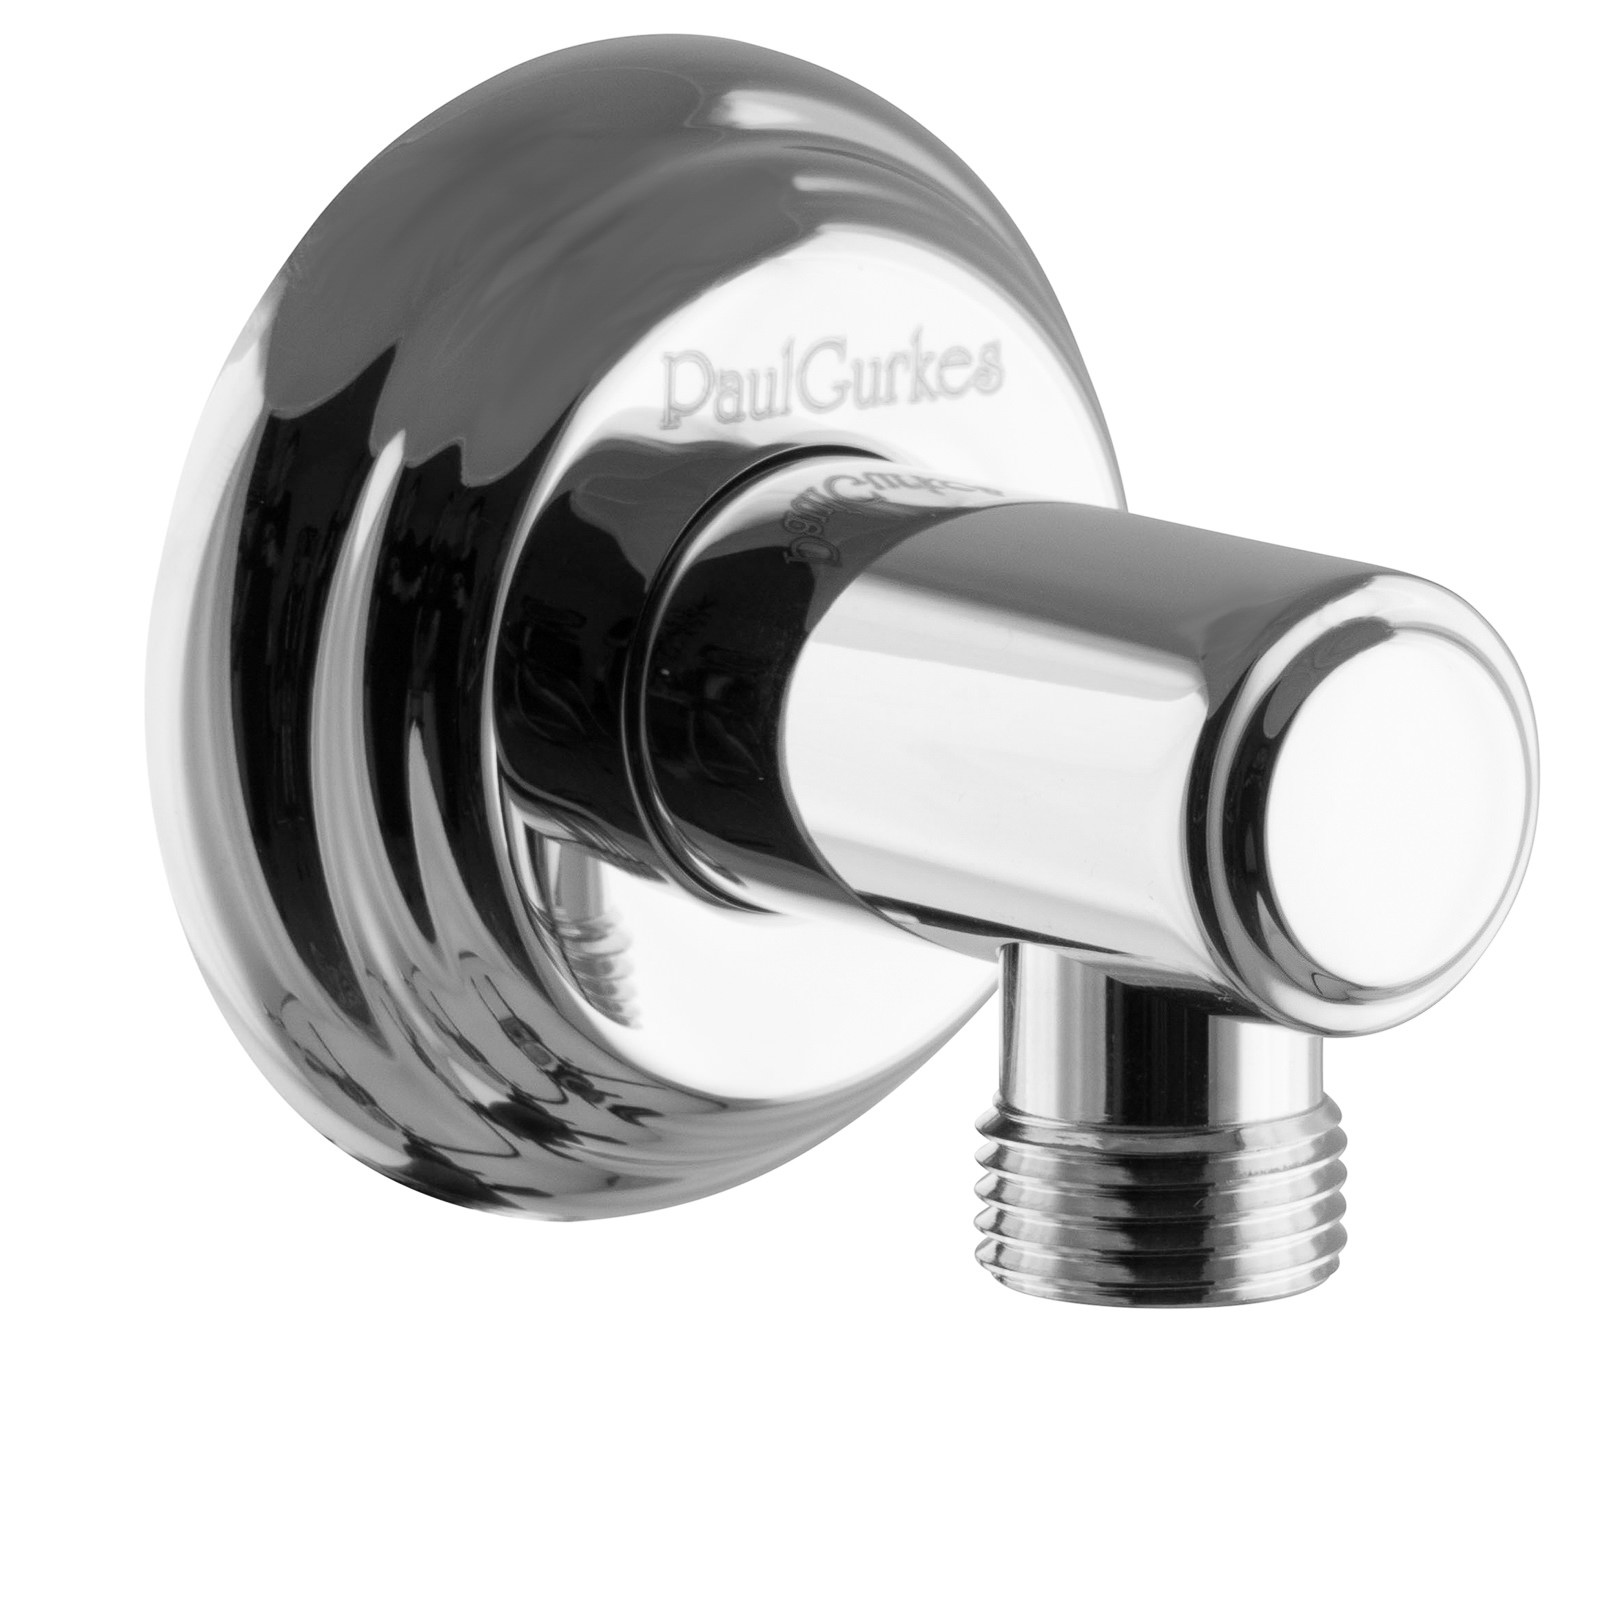 PaulGurkes 3-Wege Thermostat Duschsystem für Badewanne Nostalgie Regendusche Unterputz Set Komplett